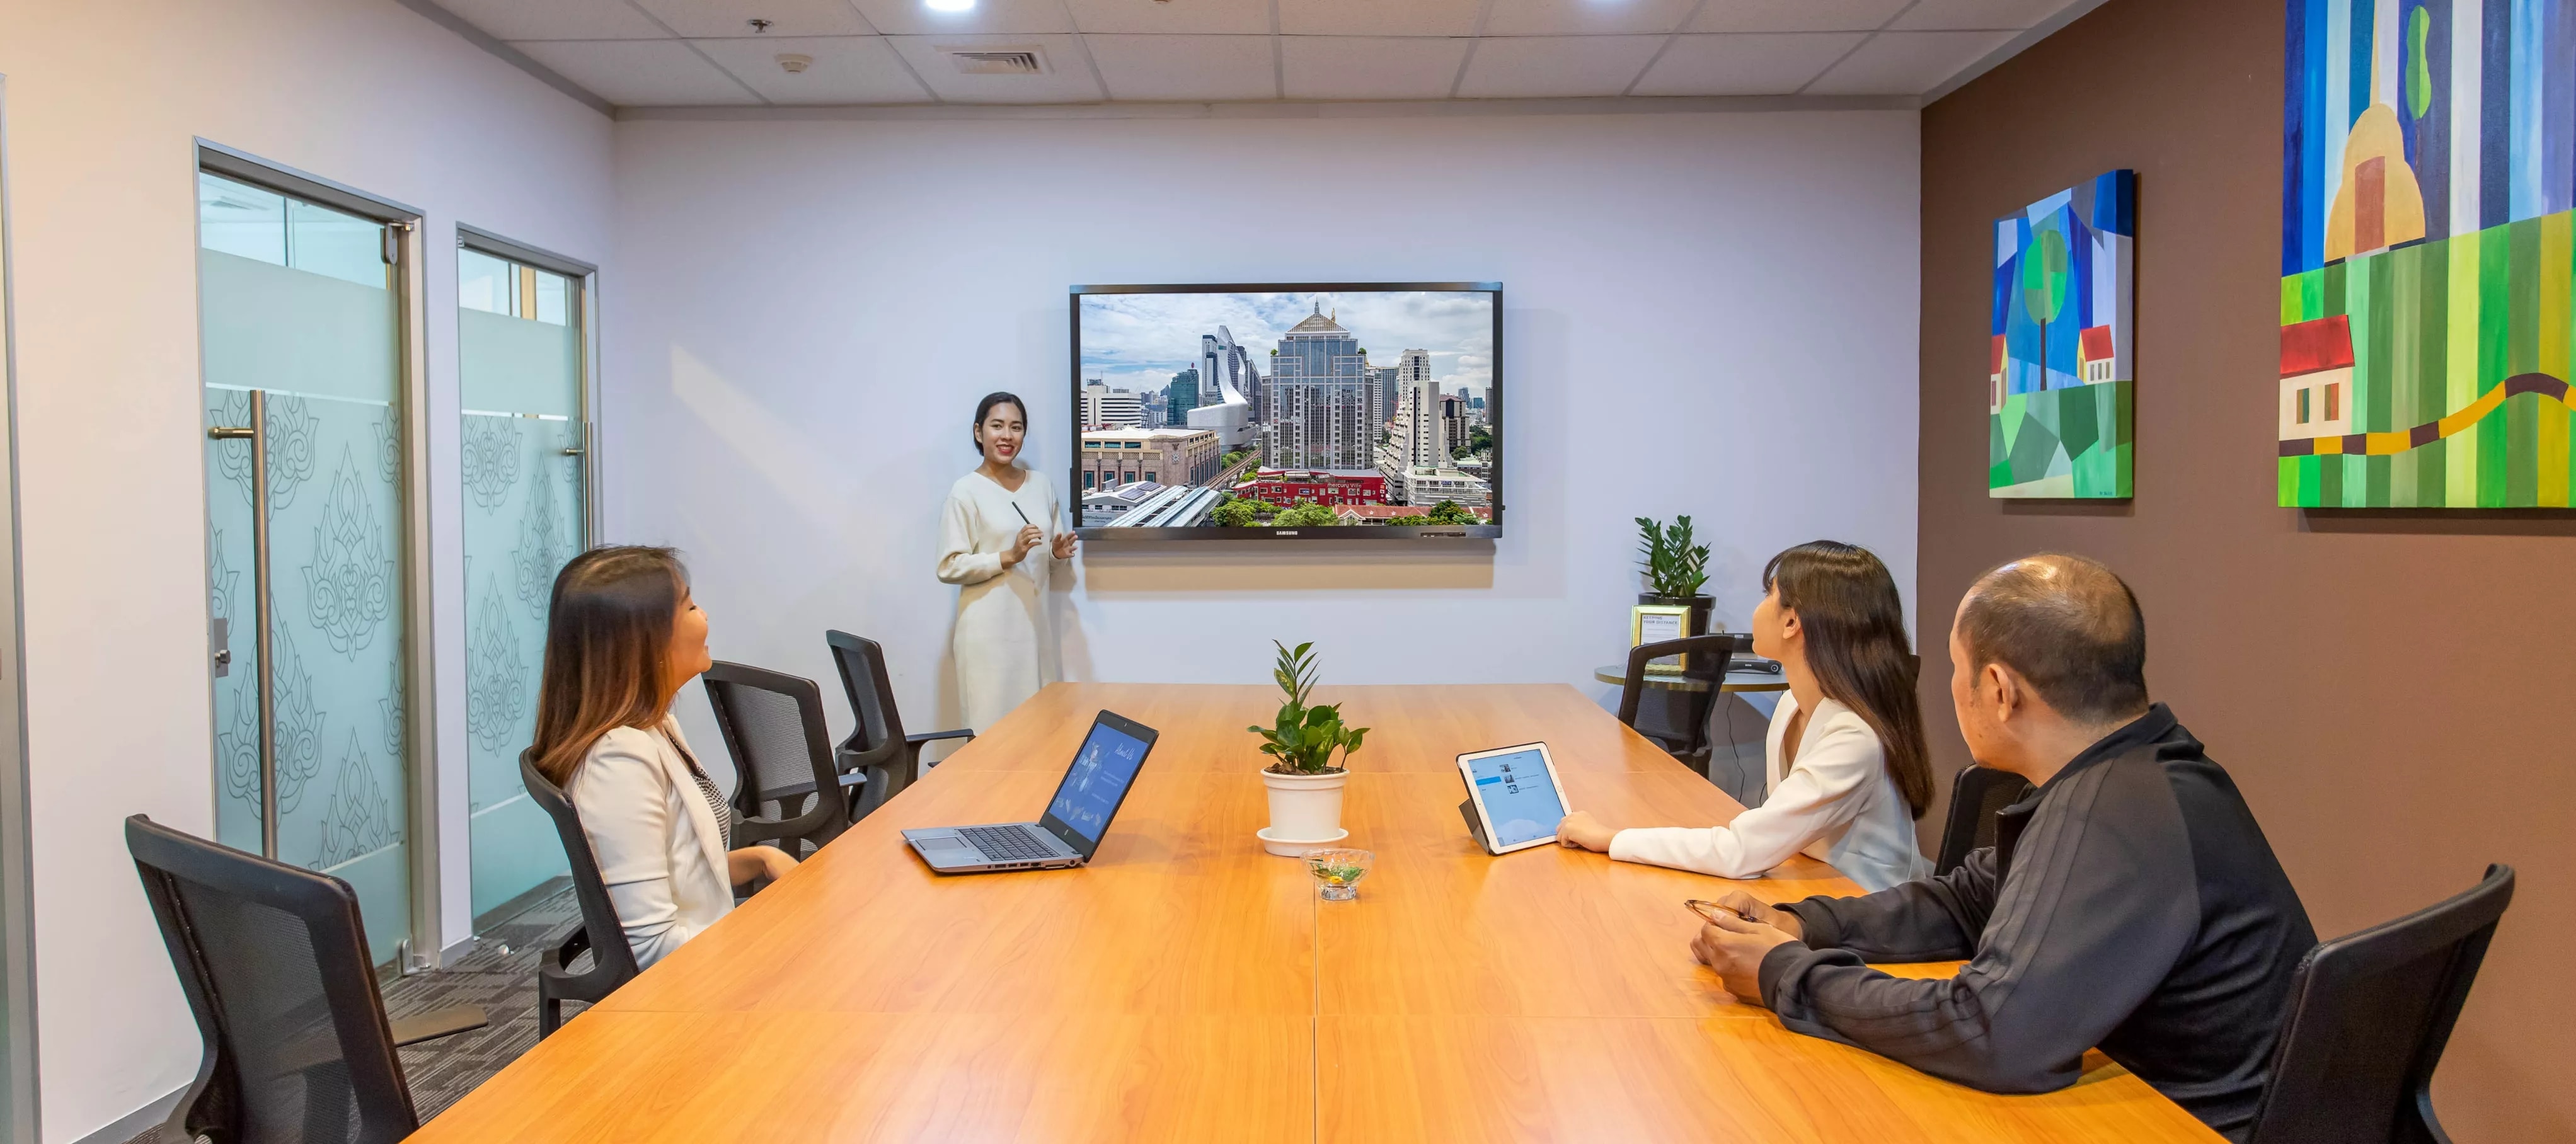 thailand-meeting-room-boardrooms.jpg